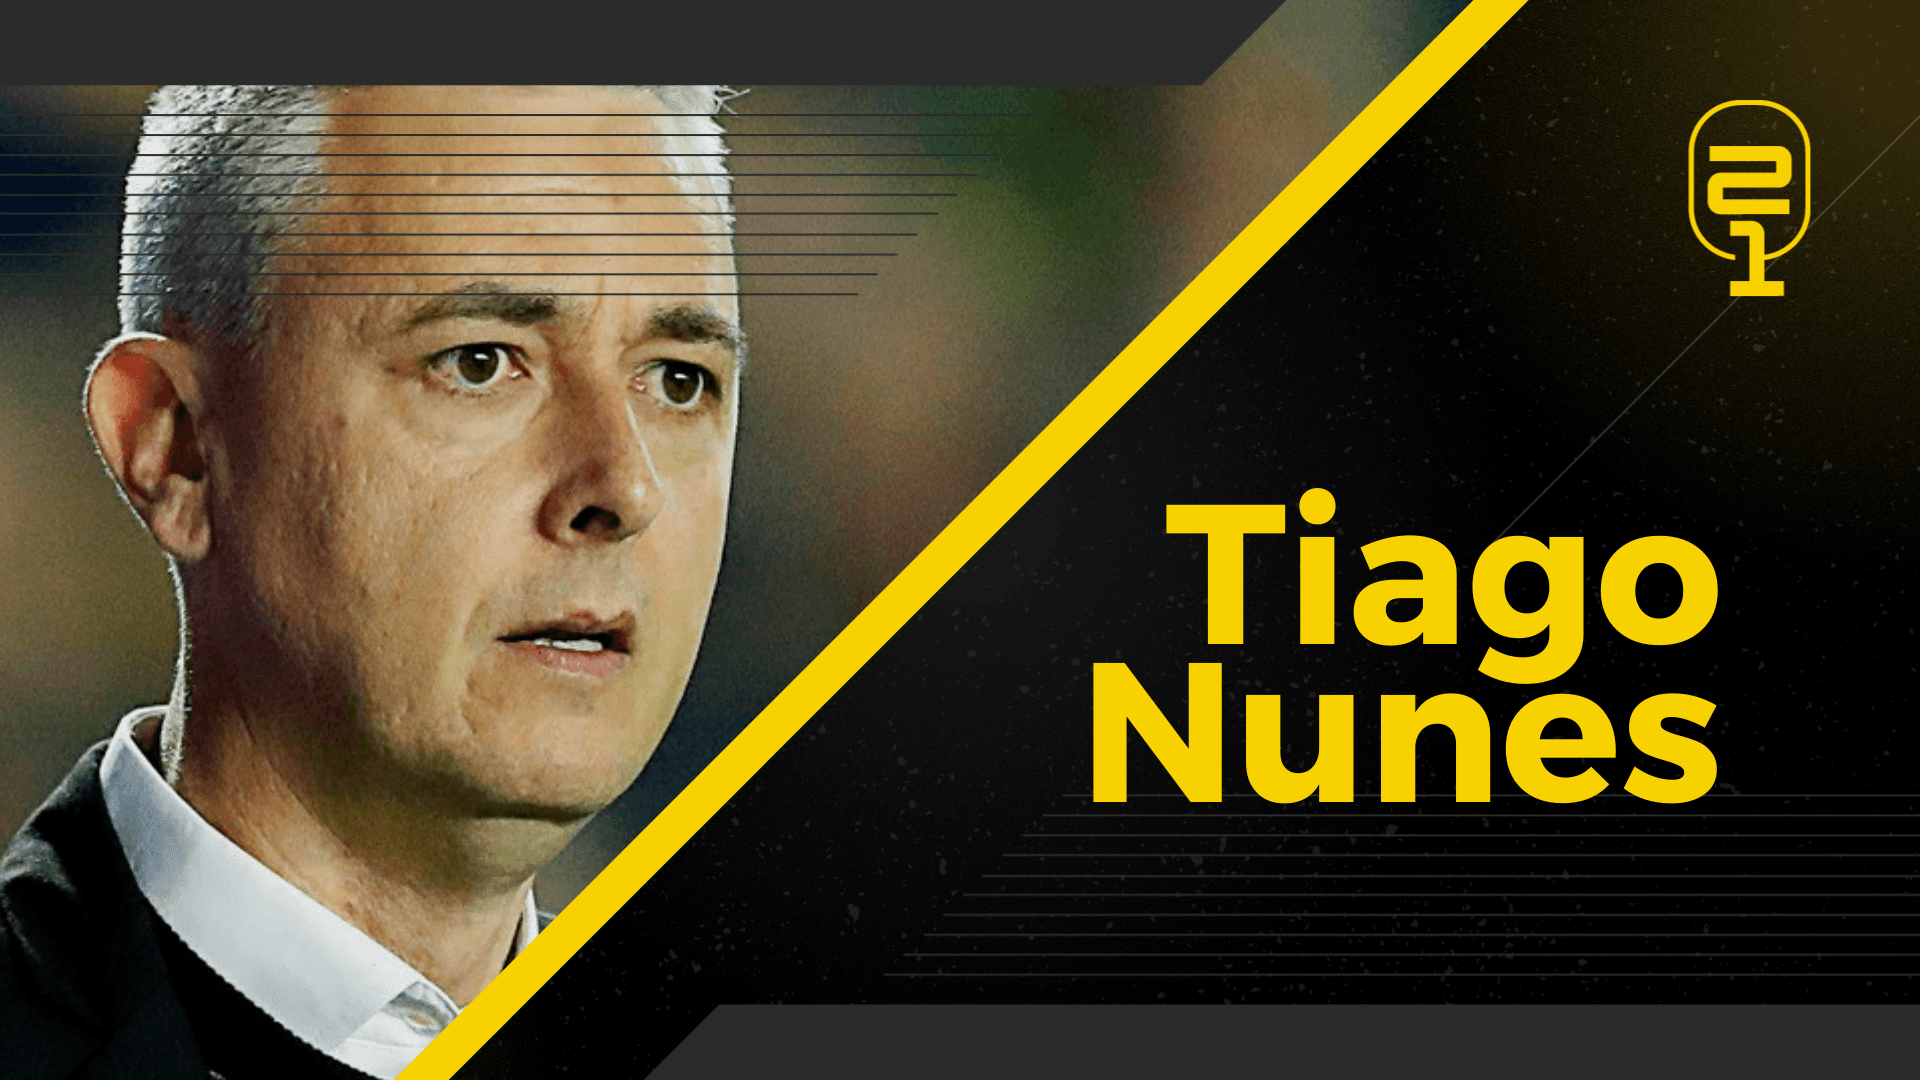 Bastidores do Athletico, Bruno Guimarães e Corinthians no podcast! Episódio #3: Tiago Nunes